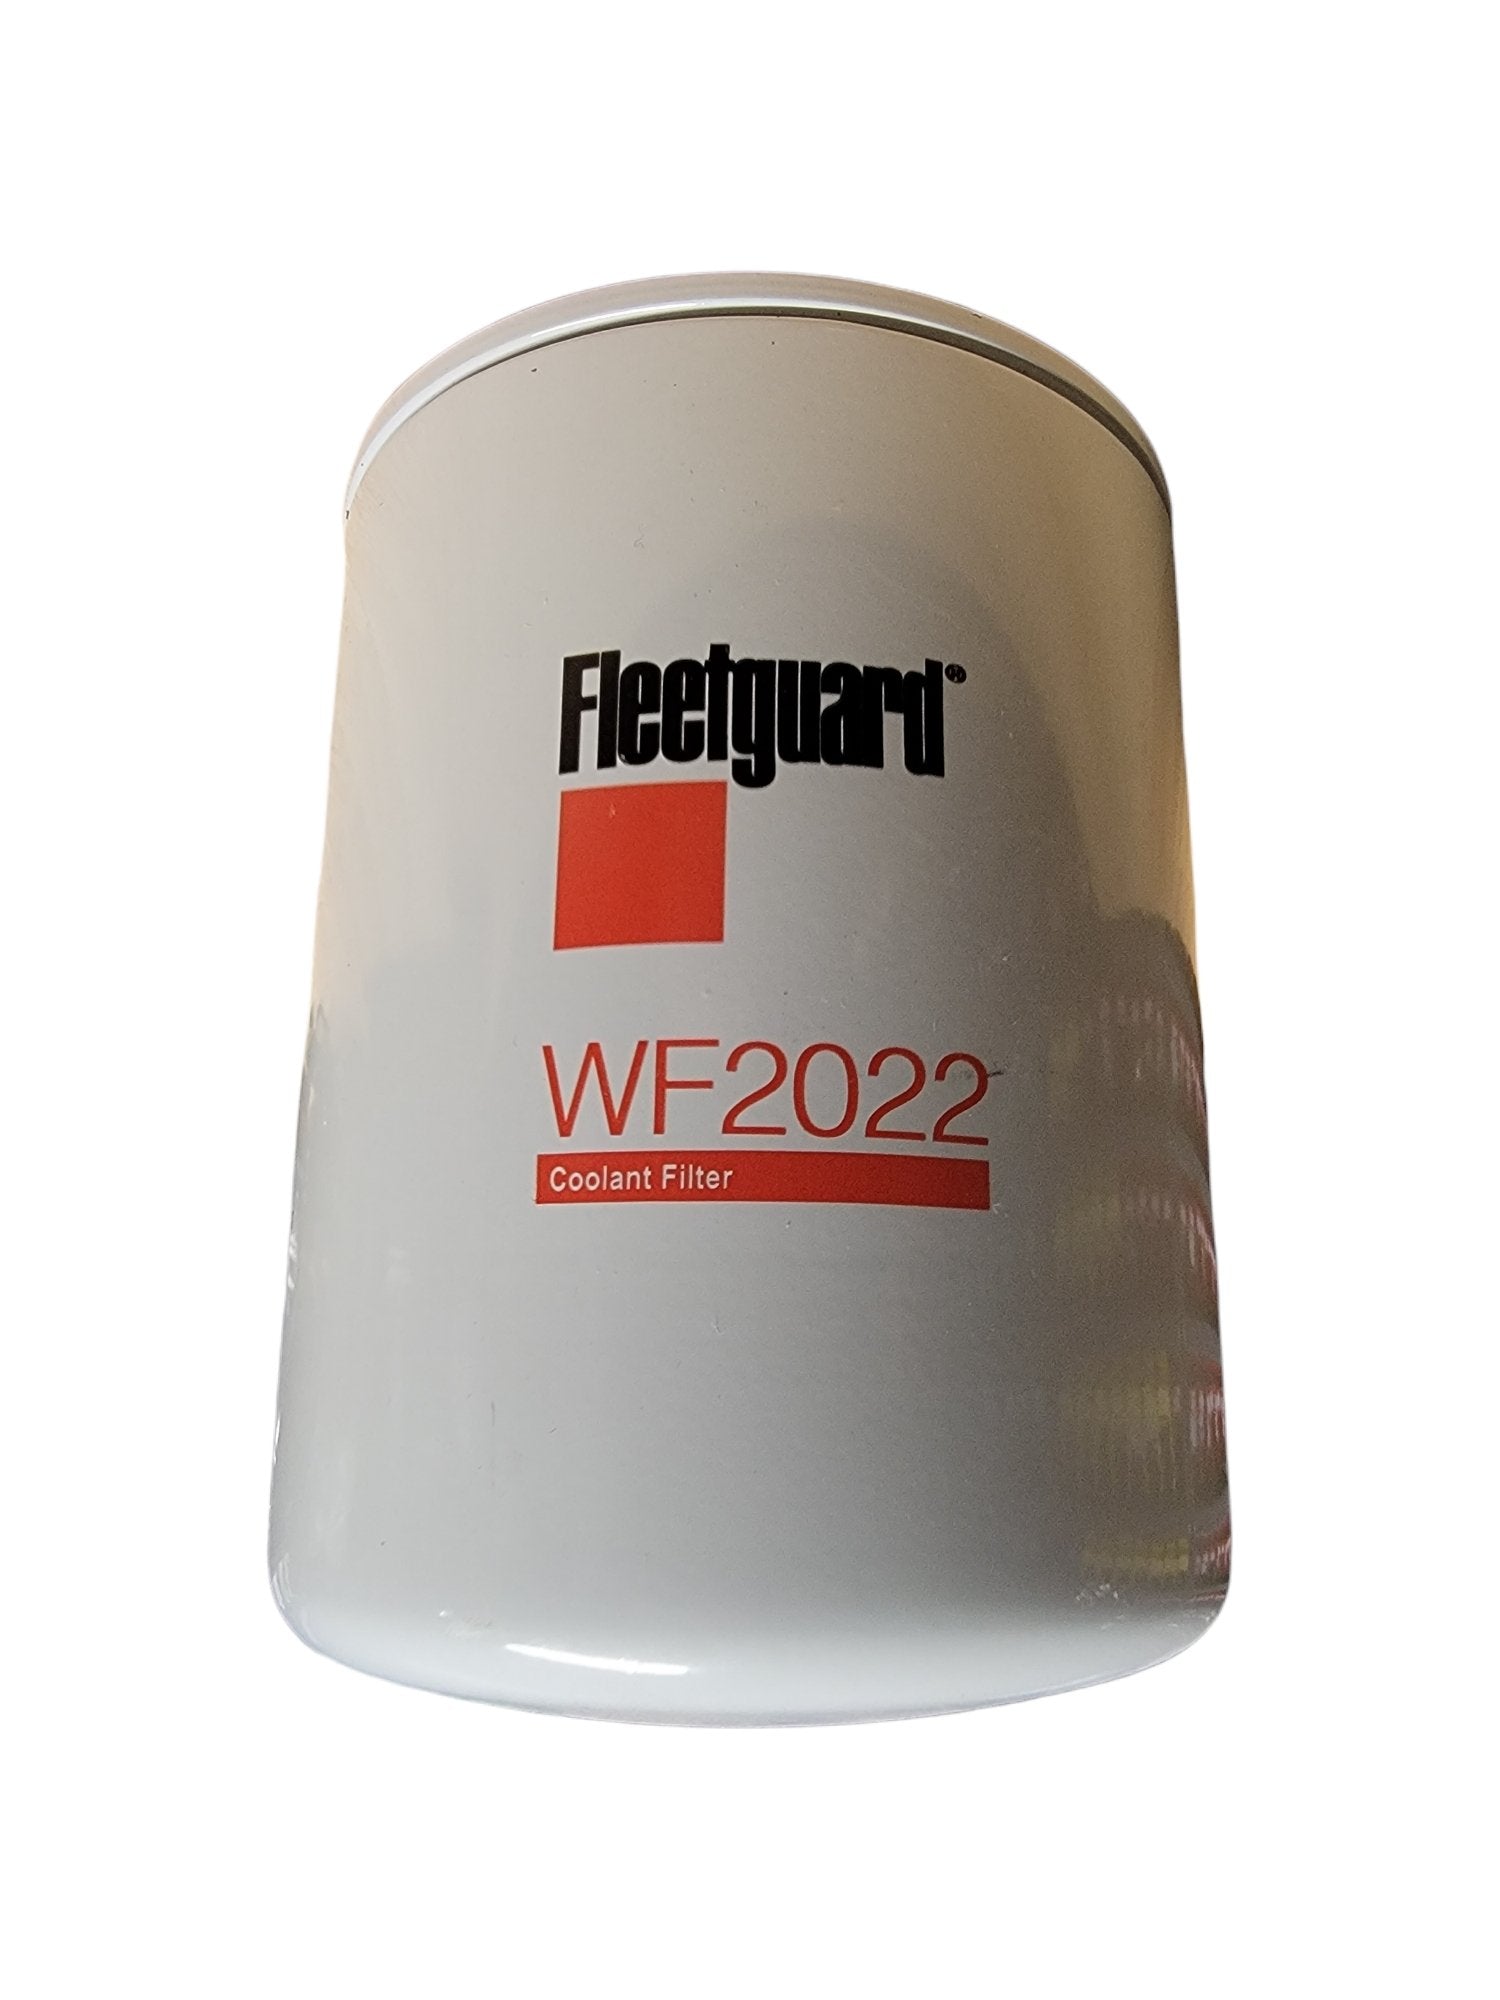 Fleetguard WF2022 Coolant Filter – All Pro Truck Parts